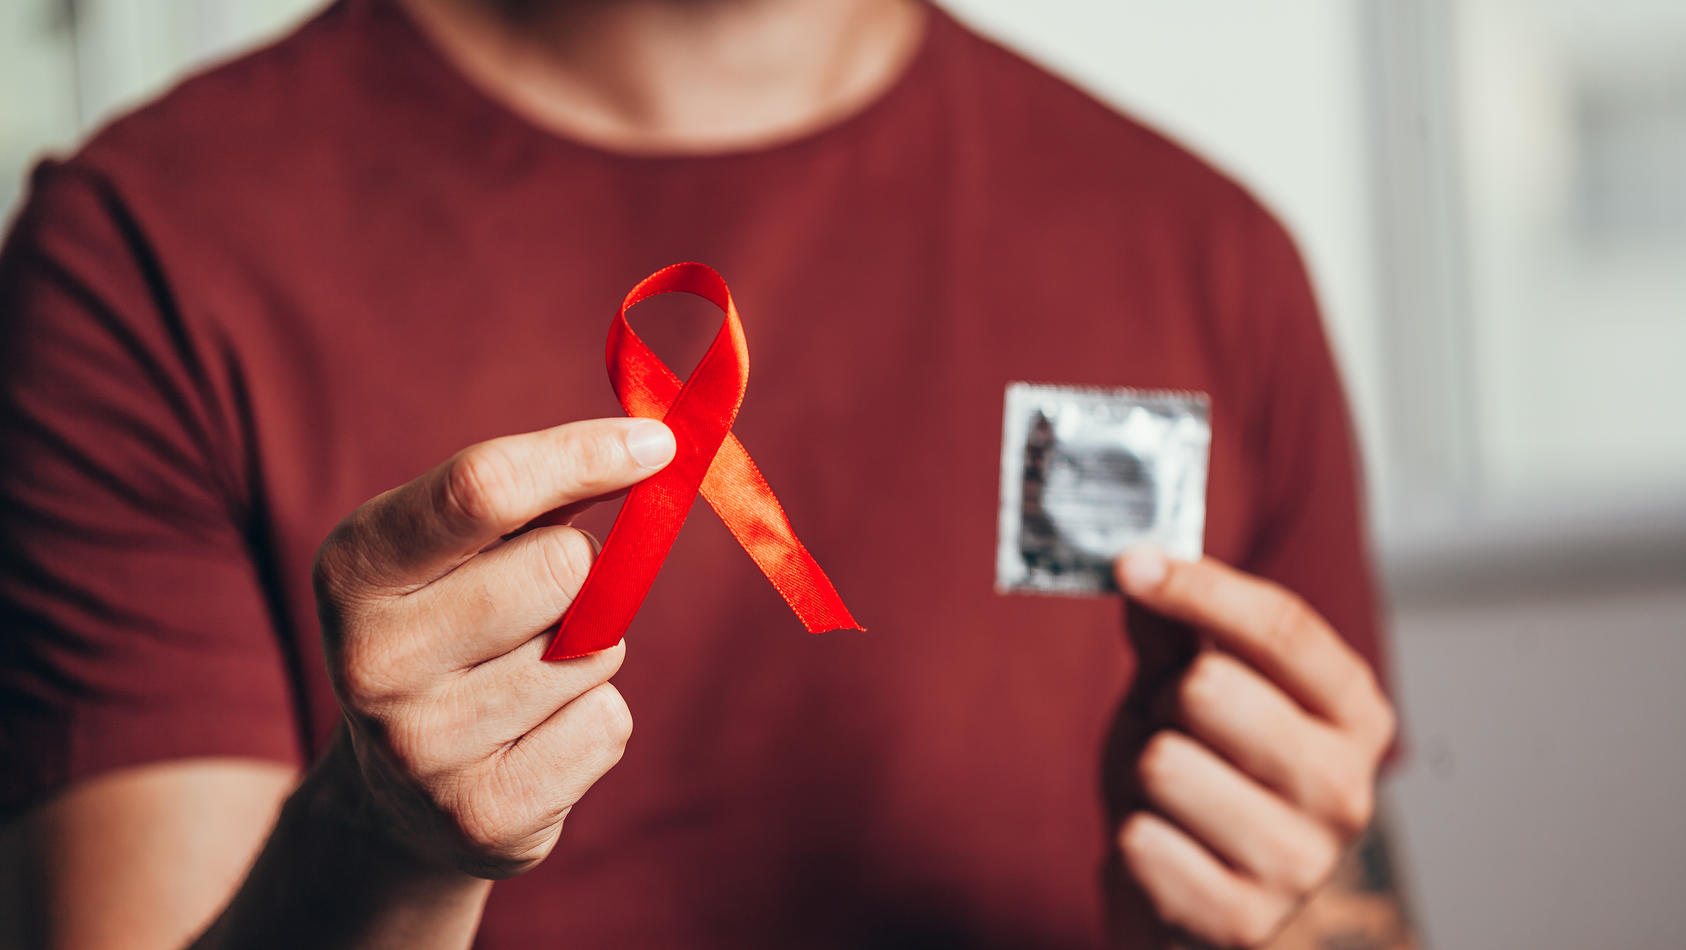 Ein Mann hält in der einen Hand ein Kondom, in der anderen eine rote Schleife, die für die Aufklärung der Krankheit HIV steht.